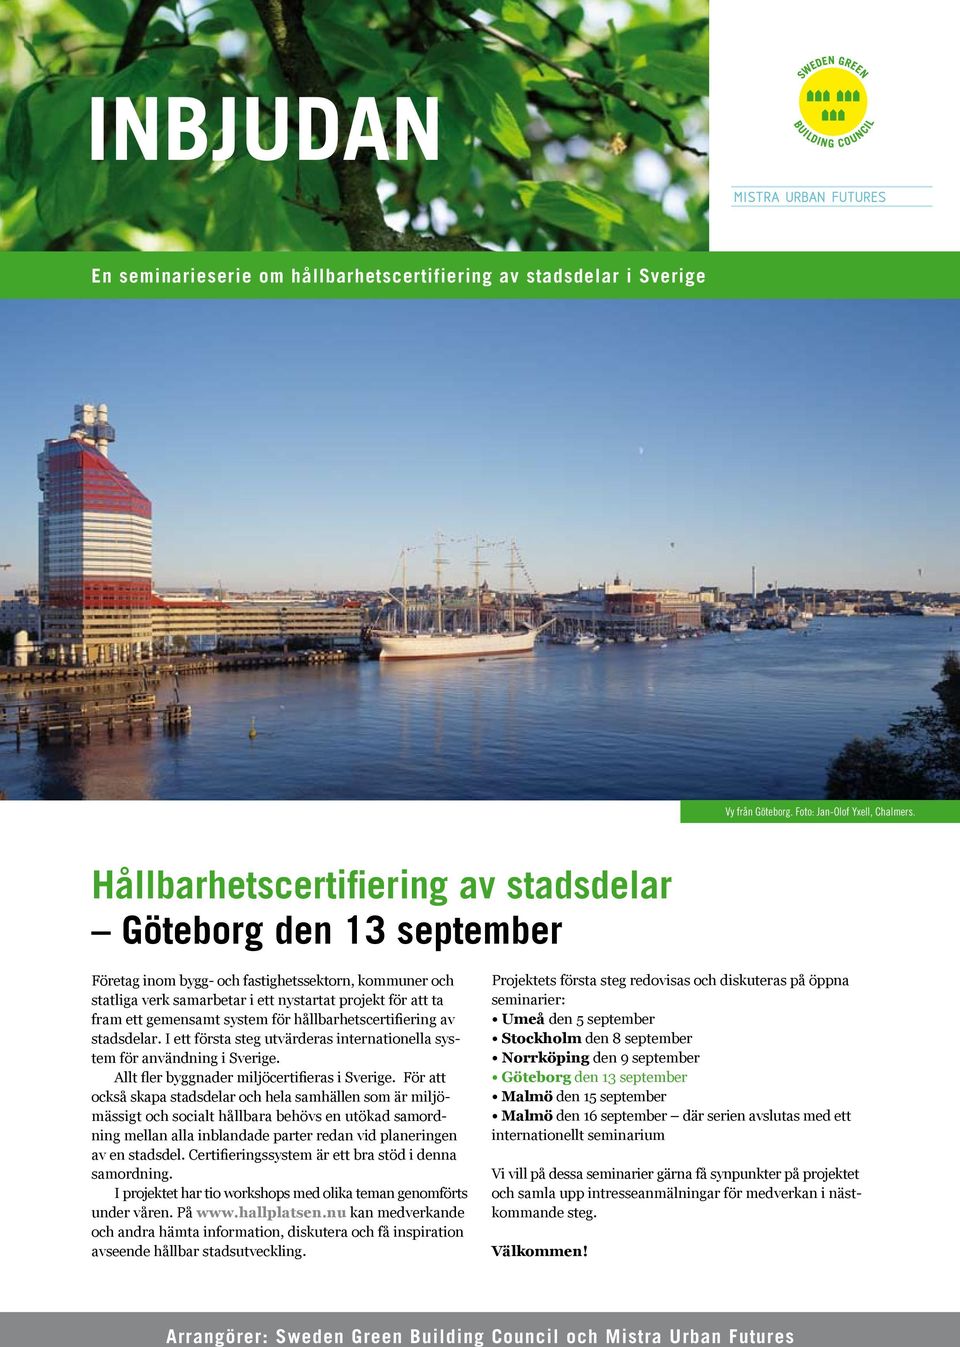 system för hållbarhetscertifiering av stadsdelar. I ett första steg utvärderas internationella system för användning i Sverige. Allt fler byggnader miljöcertifieras i Sverige.